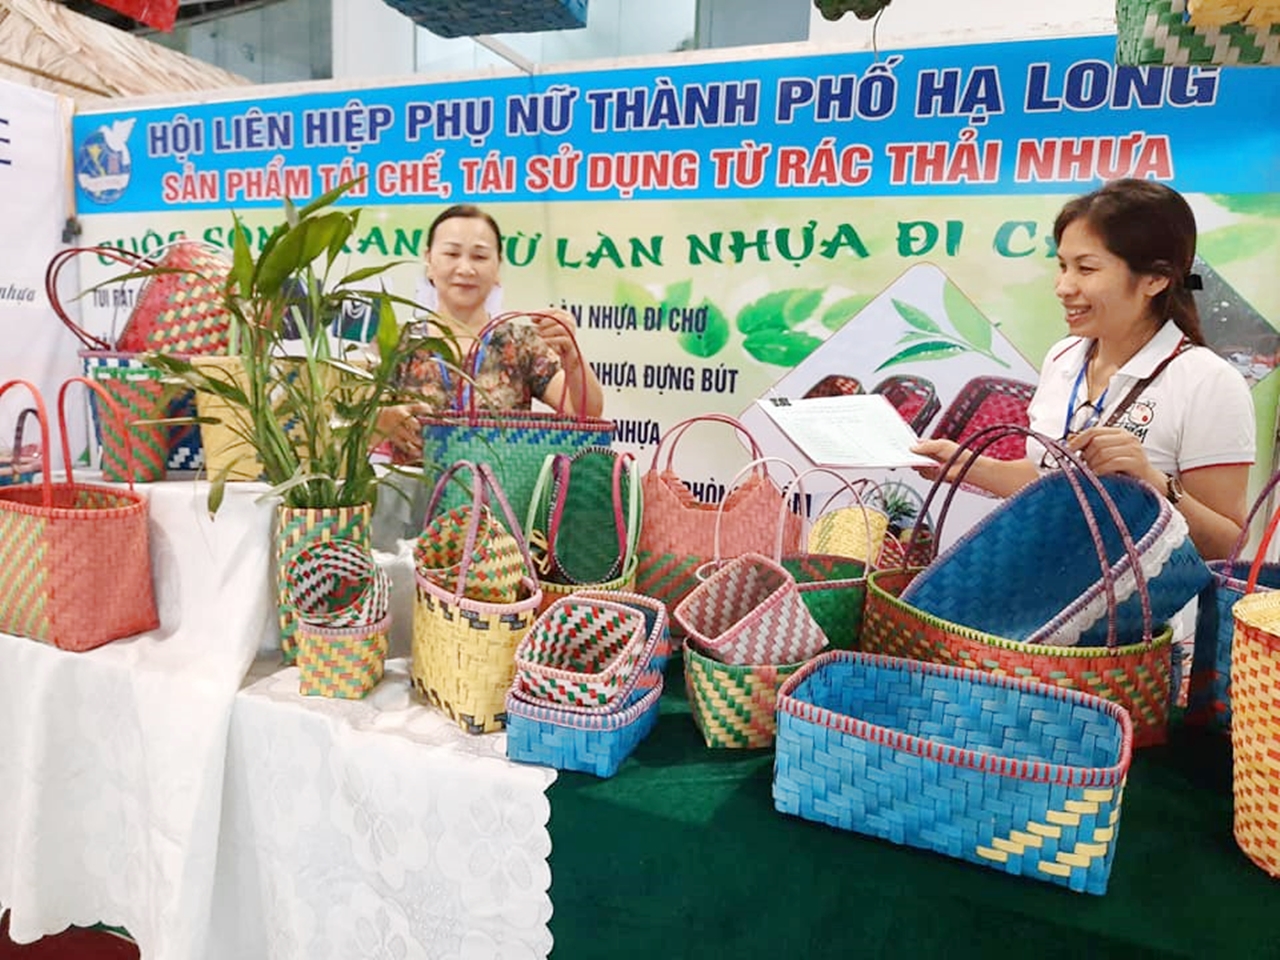 Các sản phẩm làn nhựa tái chế được bày bán tại Hội chợ OCOP Quảng Ninh - Hè 2020.